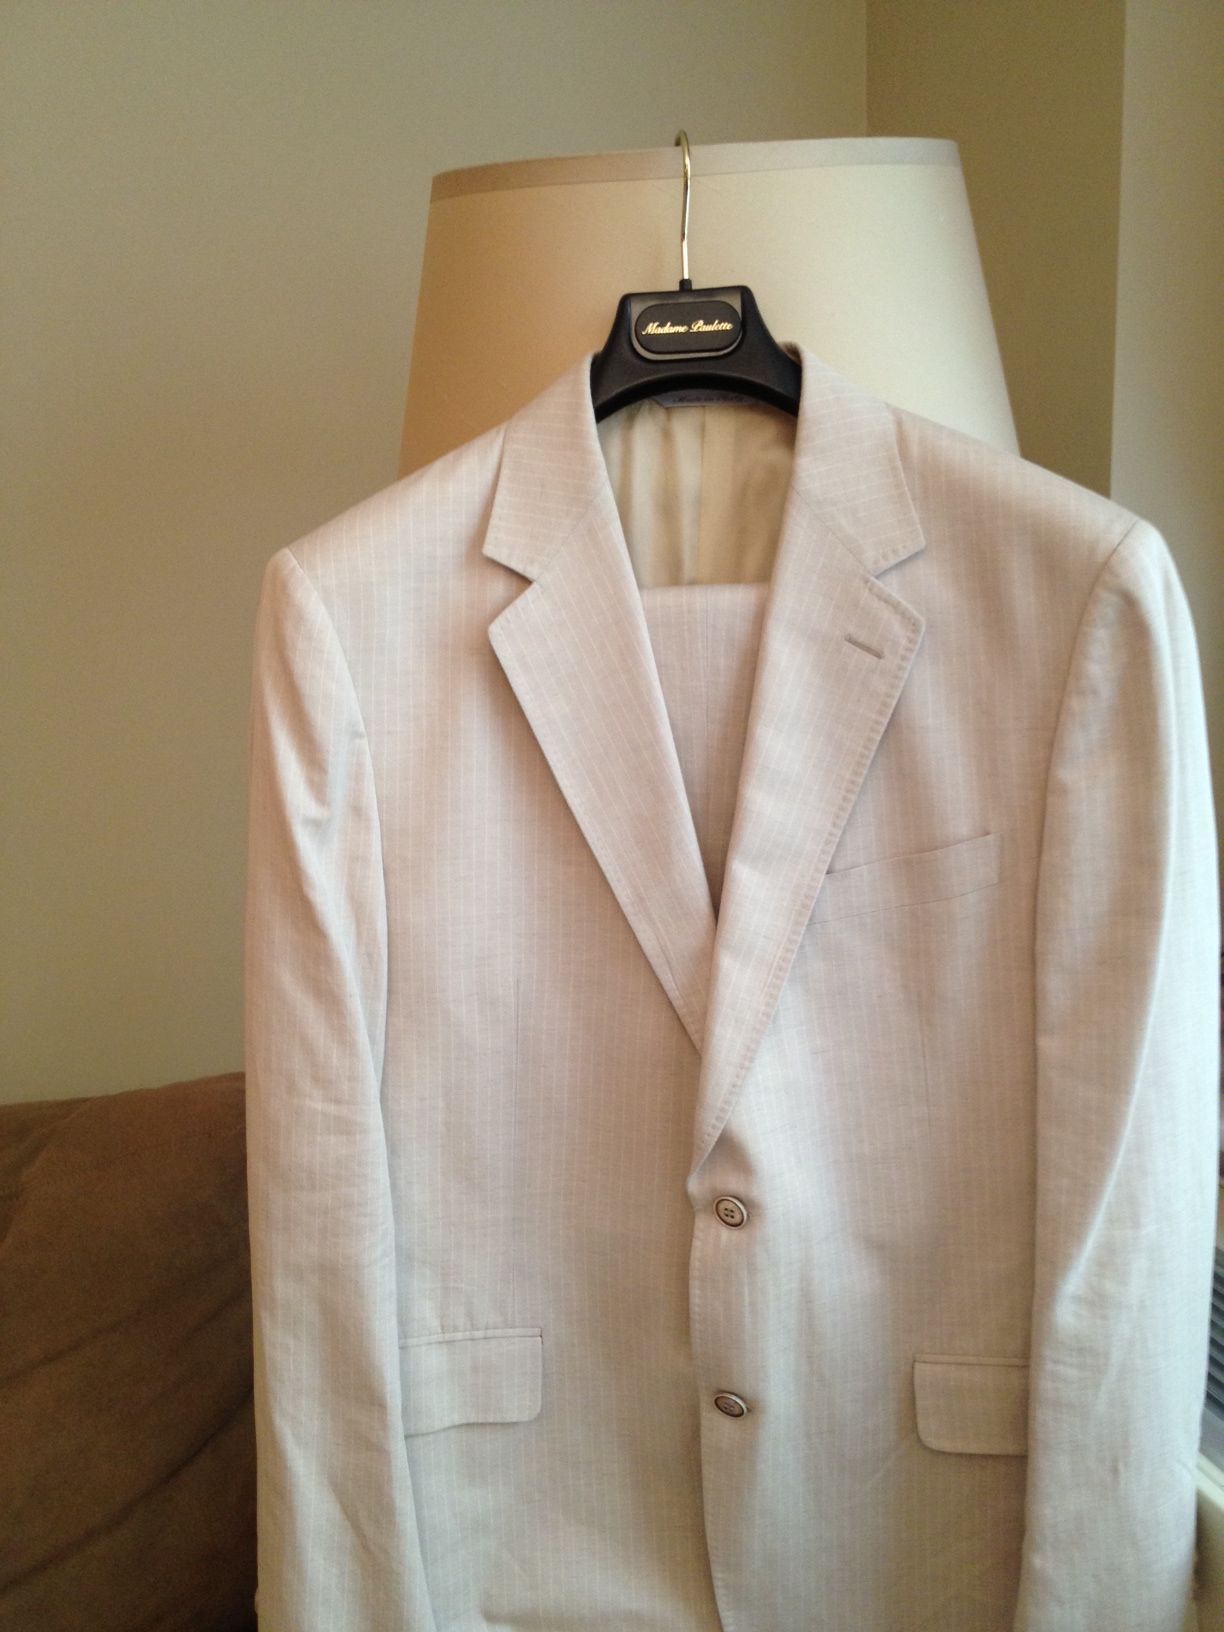 Canali Linen Suit (Size 52 European)